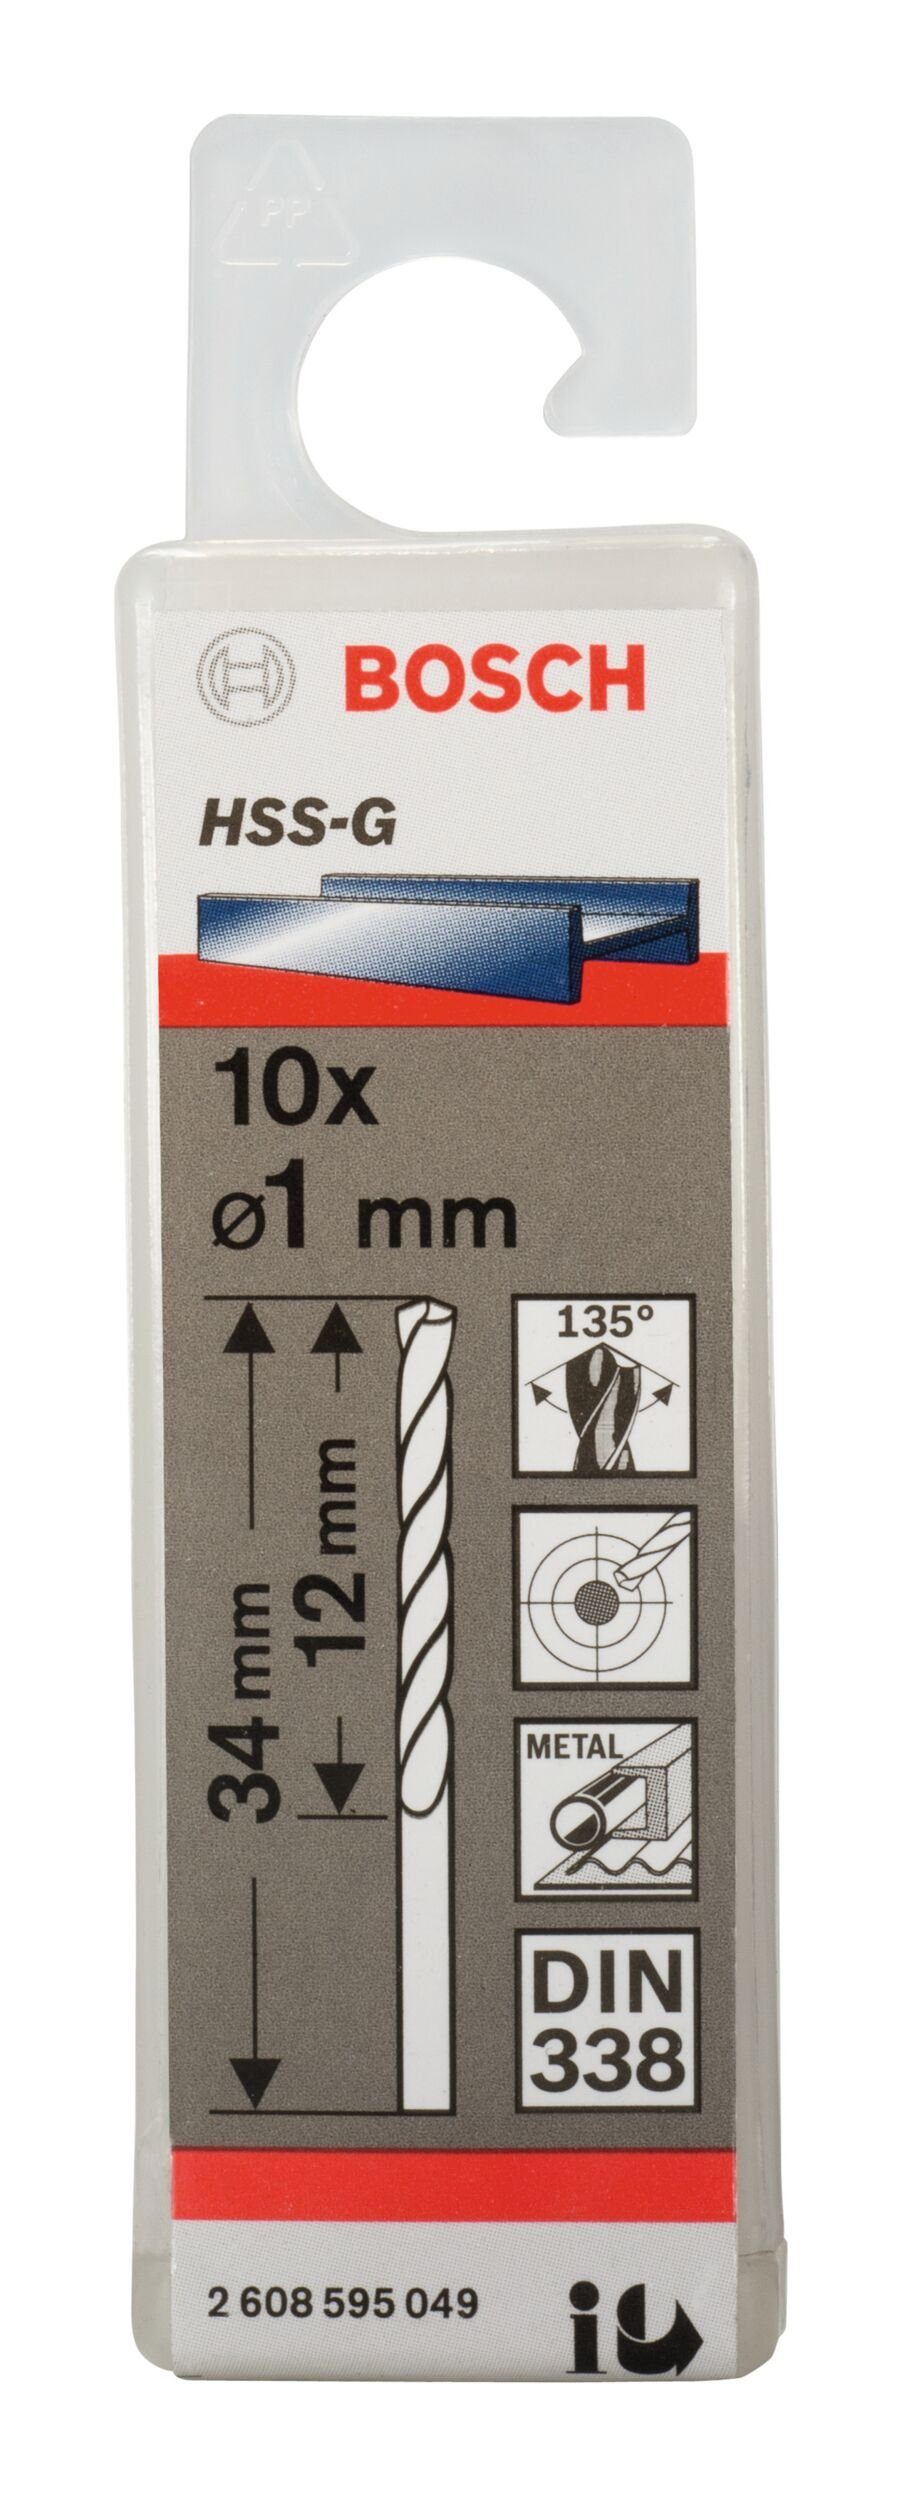 - 1 (10 338) x 10er-Pack (DIN mm x 12 HSS-G 34 Stück), - BOSCH Metallbohrer,